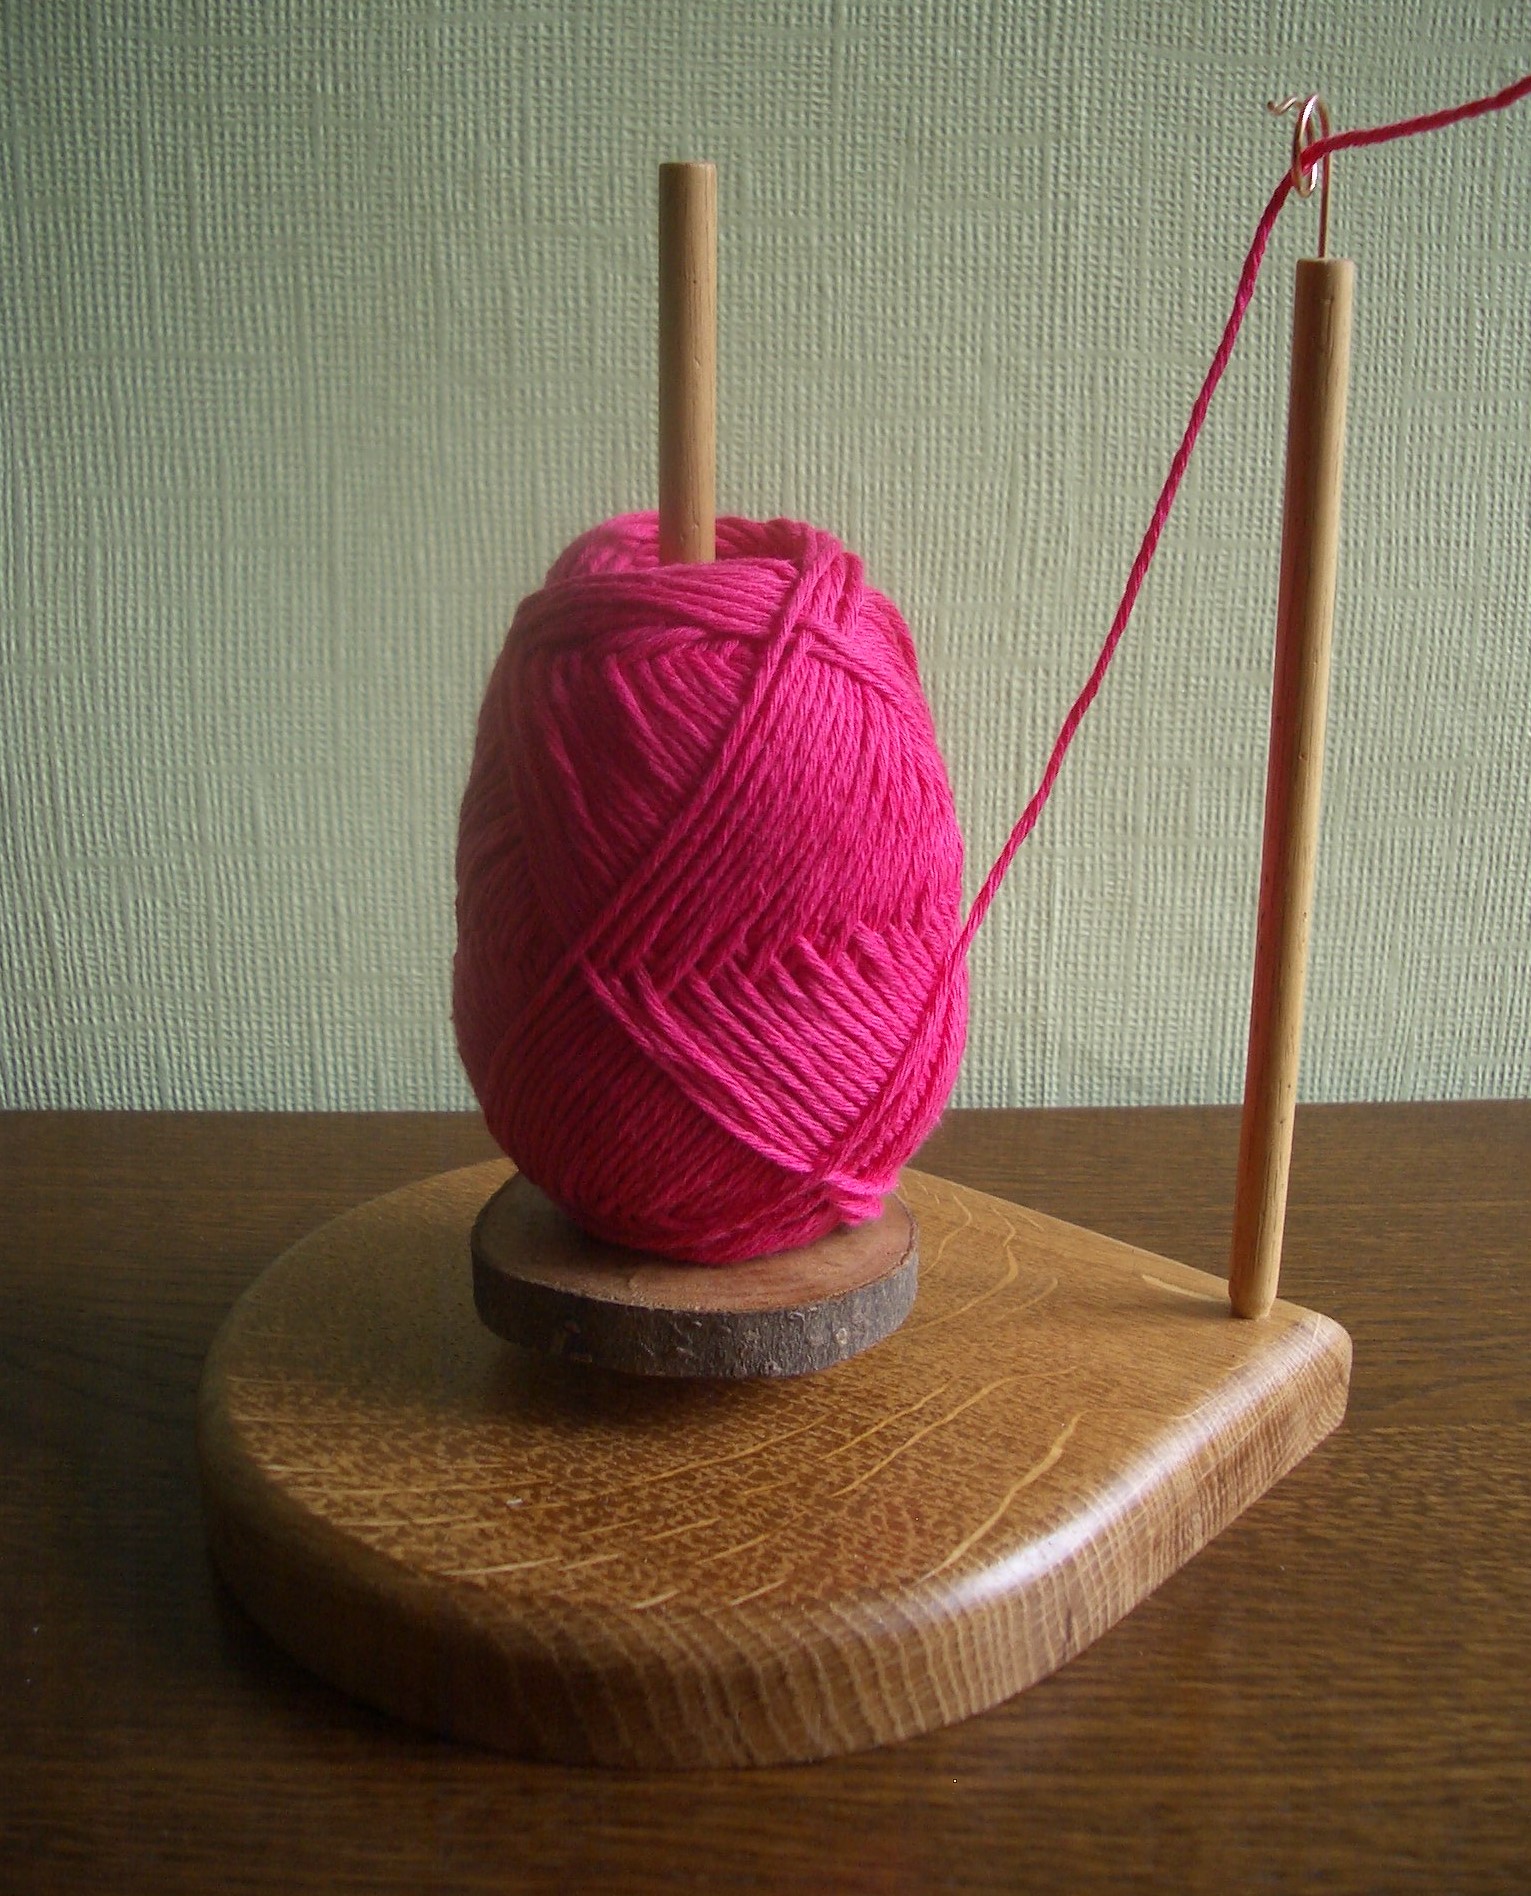 Pink yarn 2.JPG